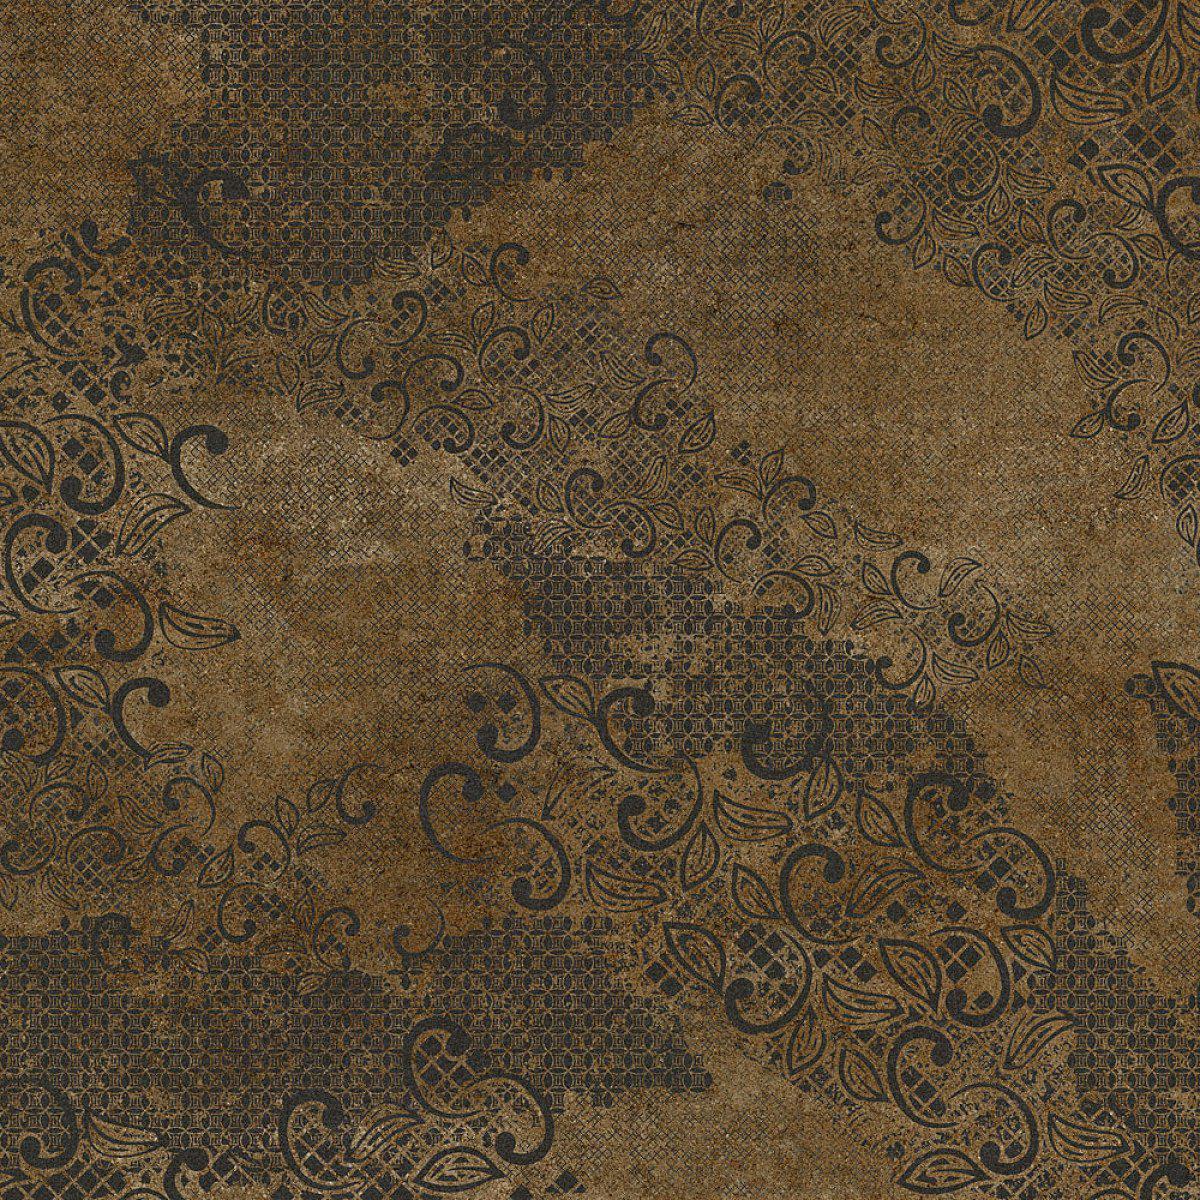 Starling-Digital Wallpaper-Tecnografica-Brown 2-62586-3